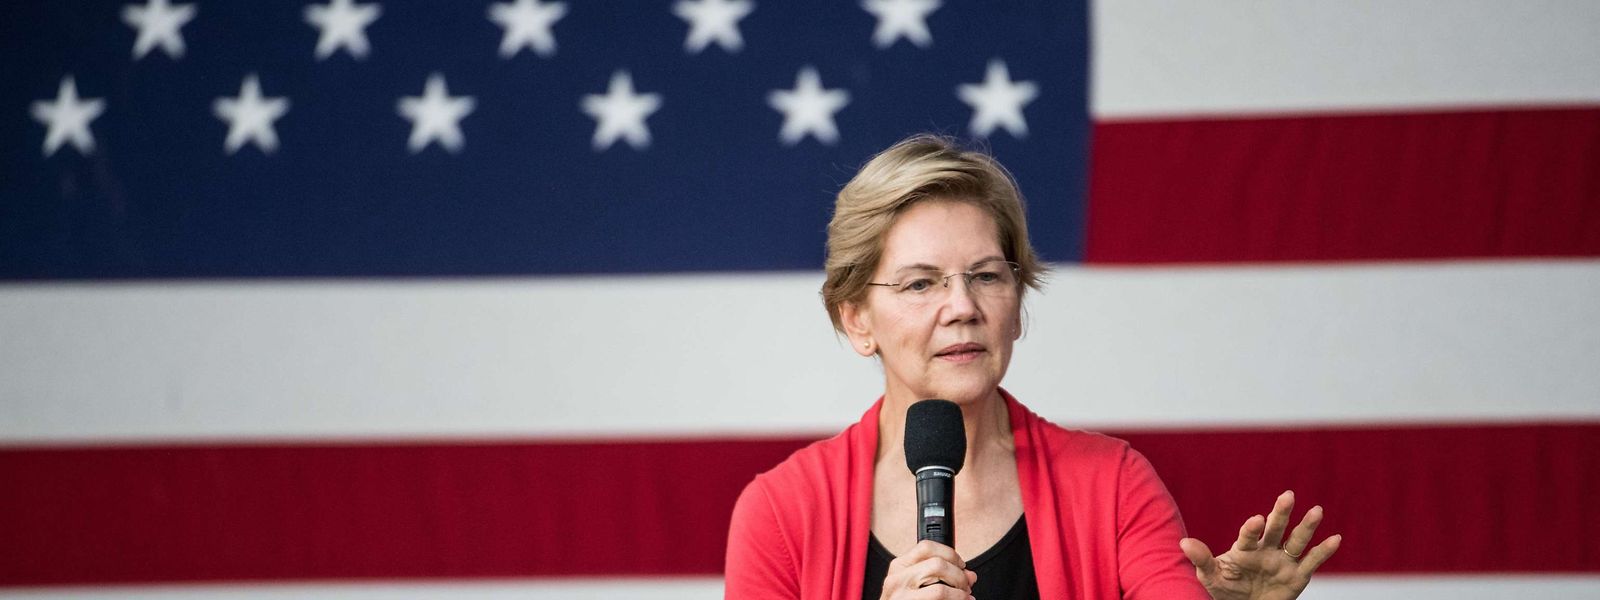 Die Senatorin und Harvard-Professorin Elizabeth Warren möchte für die Demokraten ins Rennen um das Weisse Haus gehen.